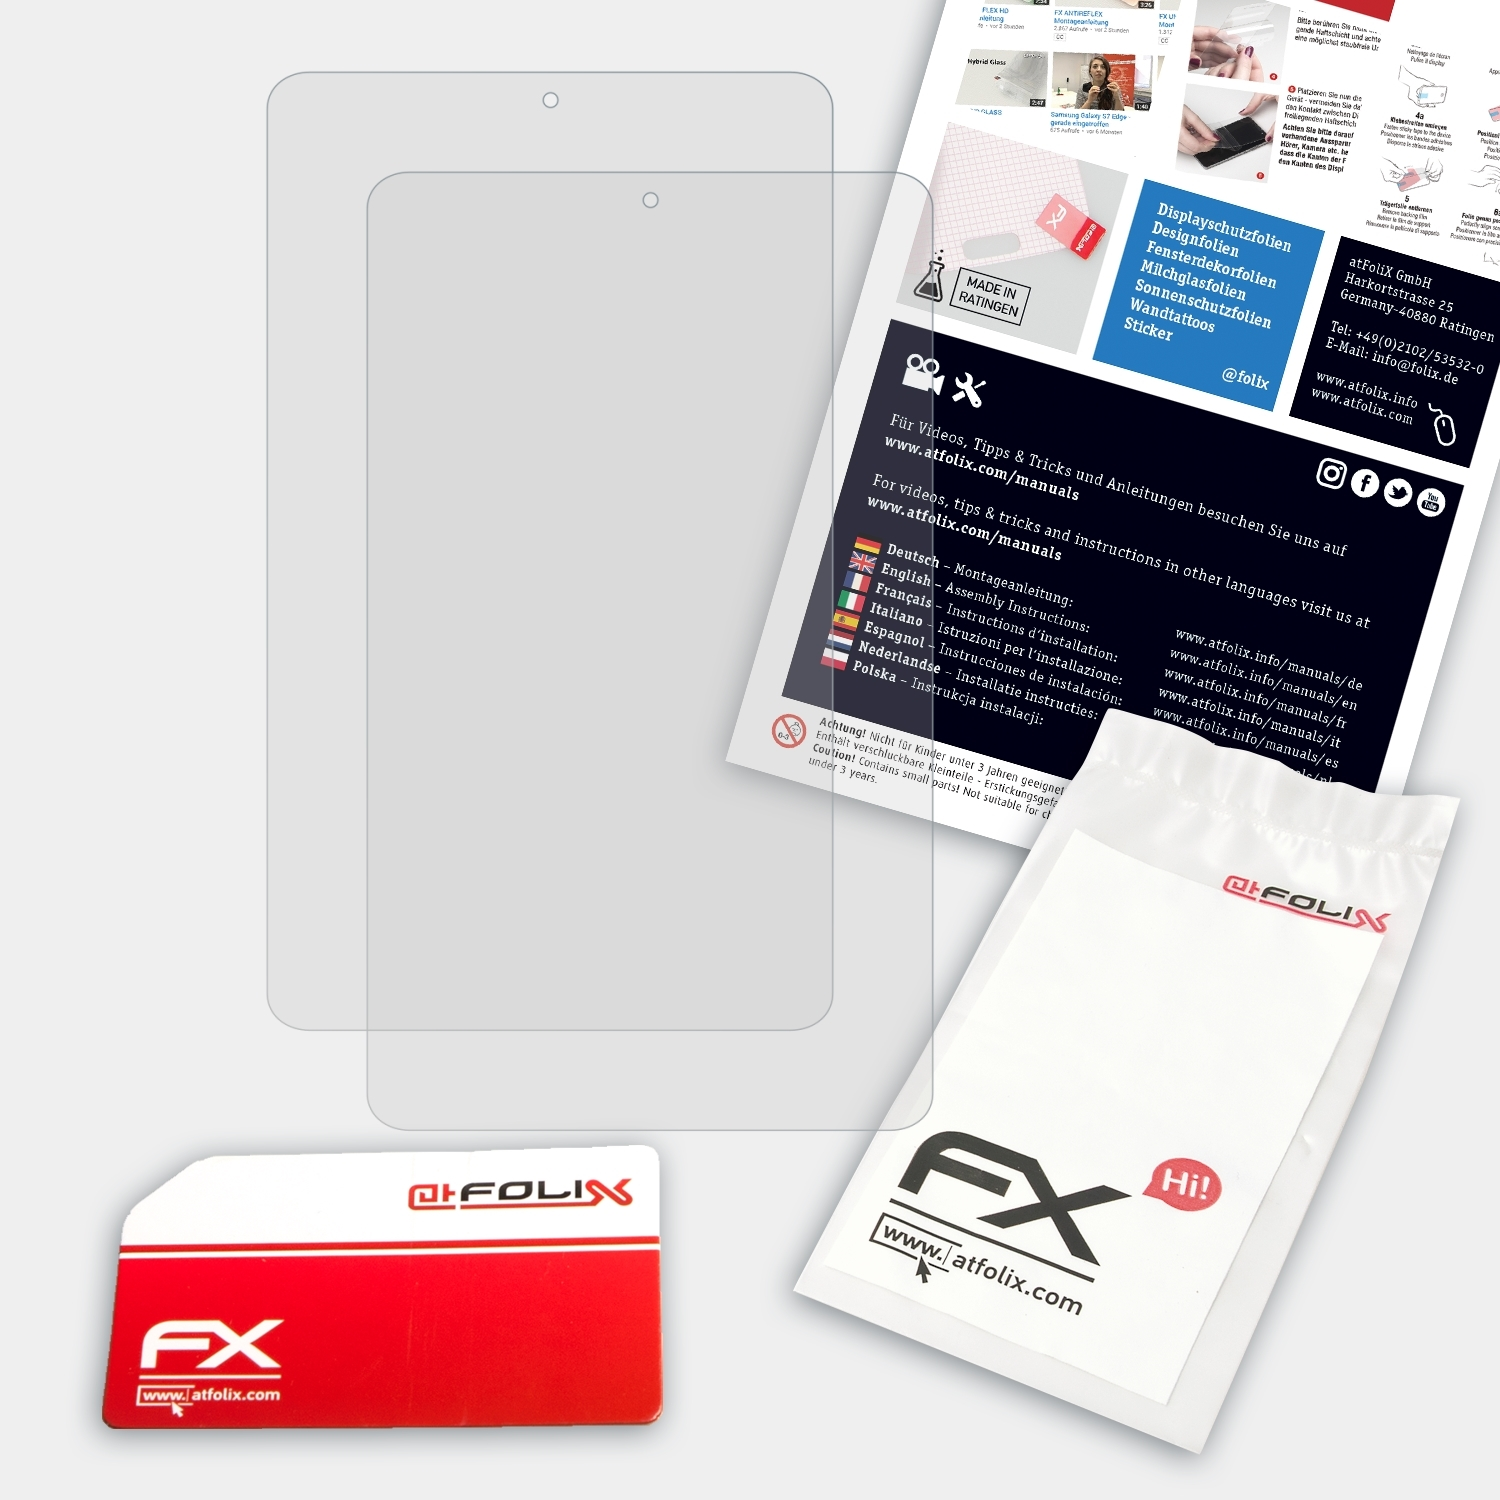 ATFOLIX 2x (B1-870)) Iconia 8 FX-Antireflex One Acer Displayschutz(für